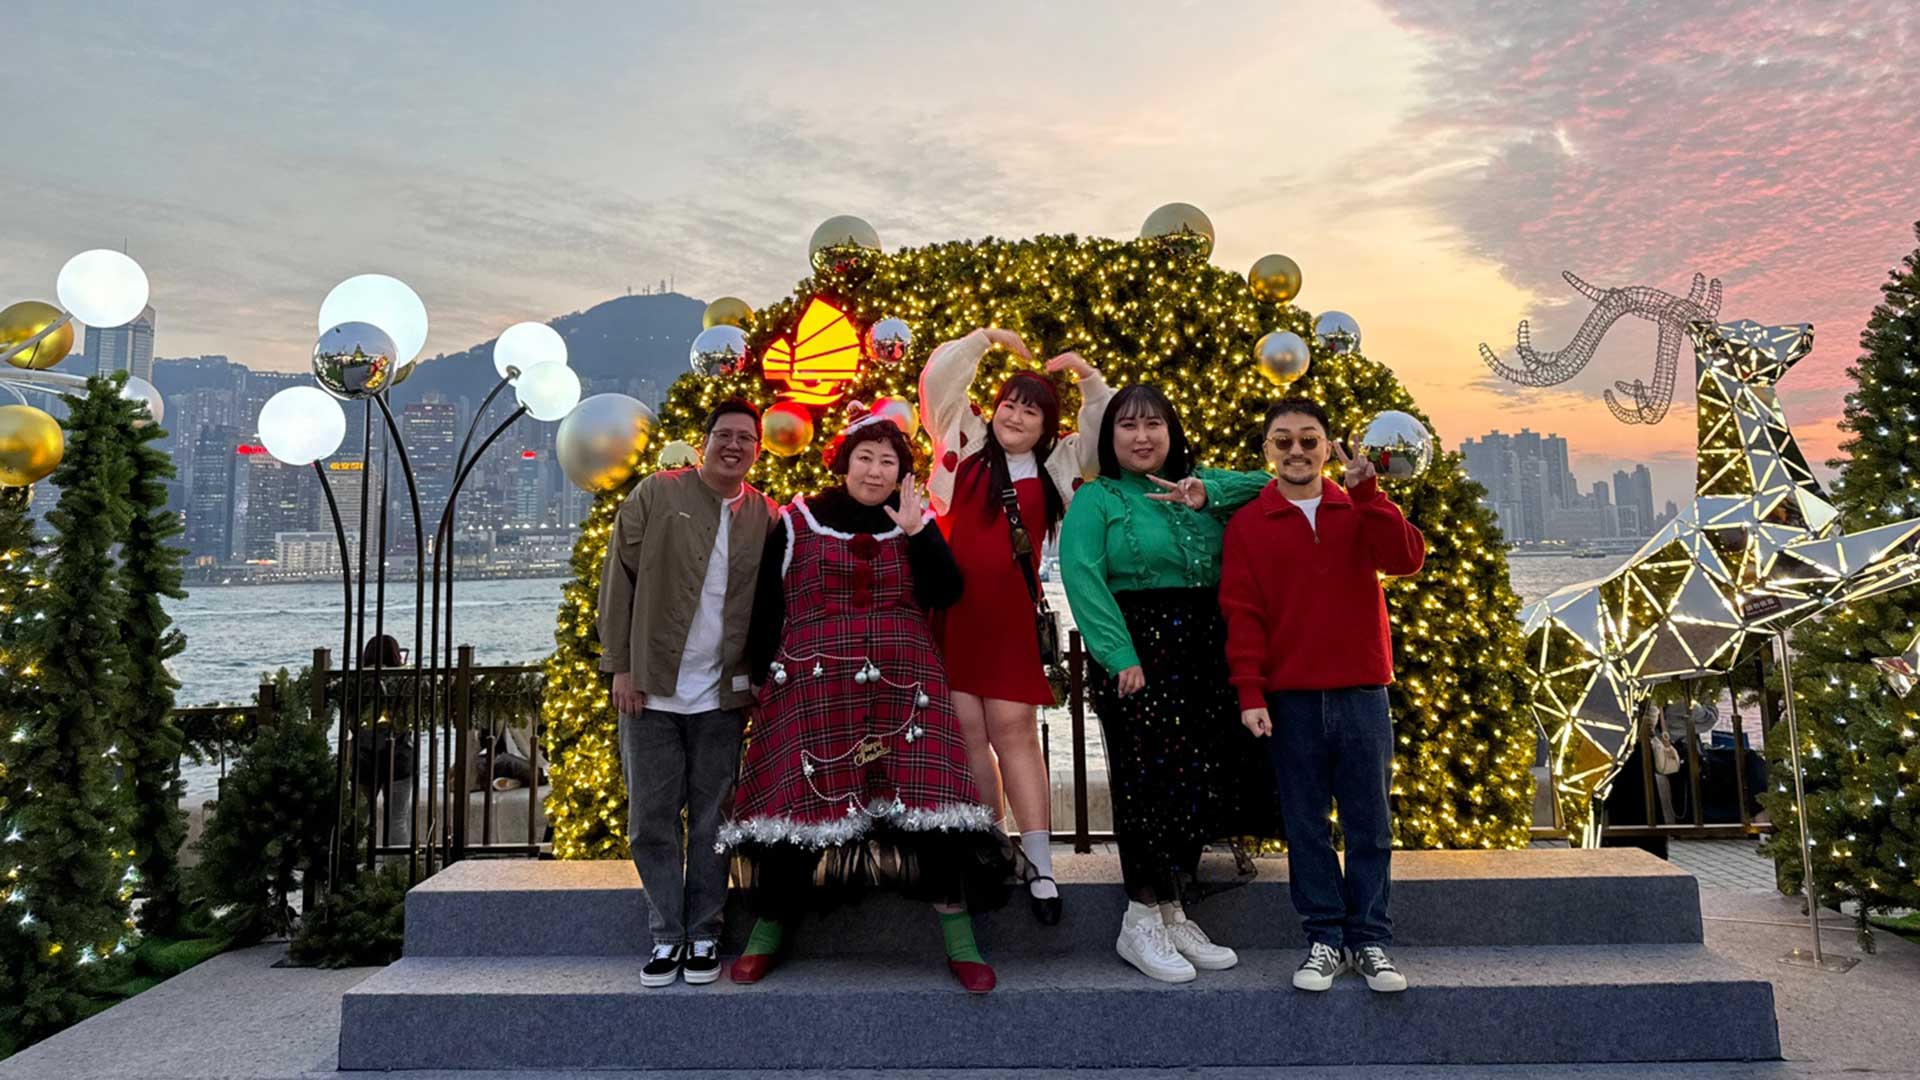 구라걸즈가 추천하는 홍콩 겨울 축제